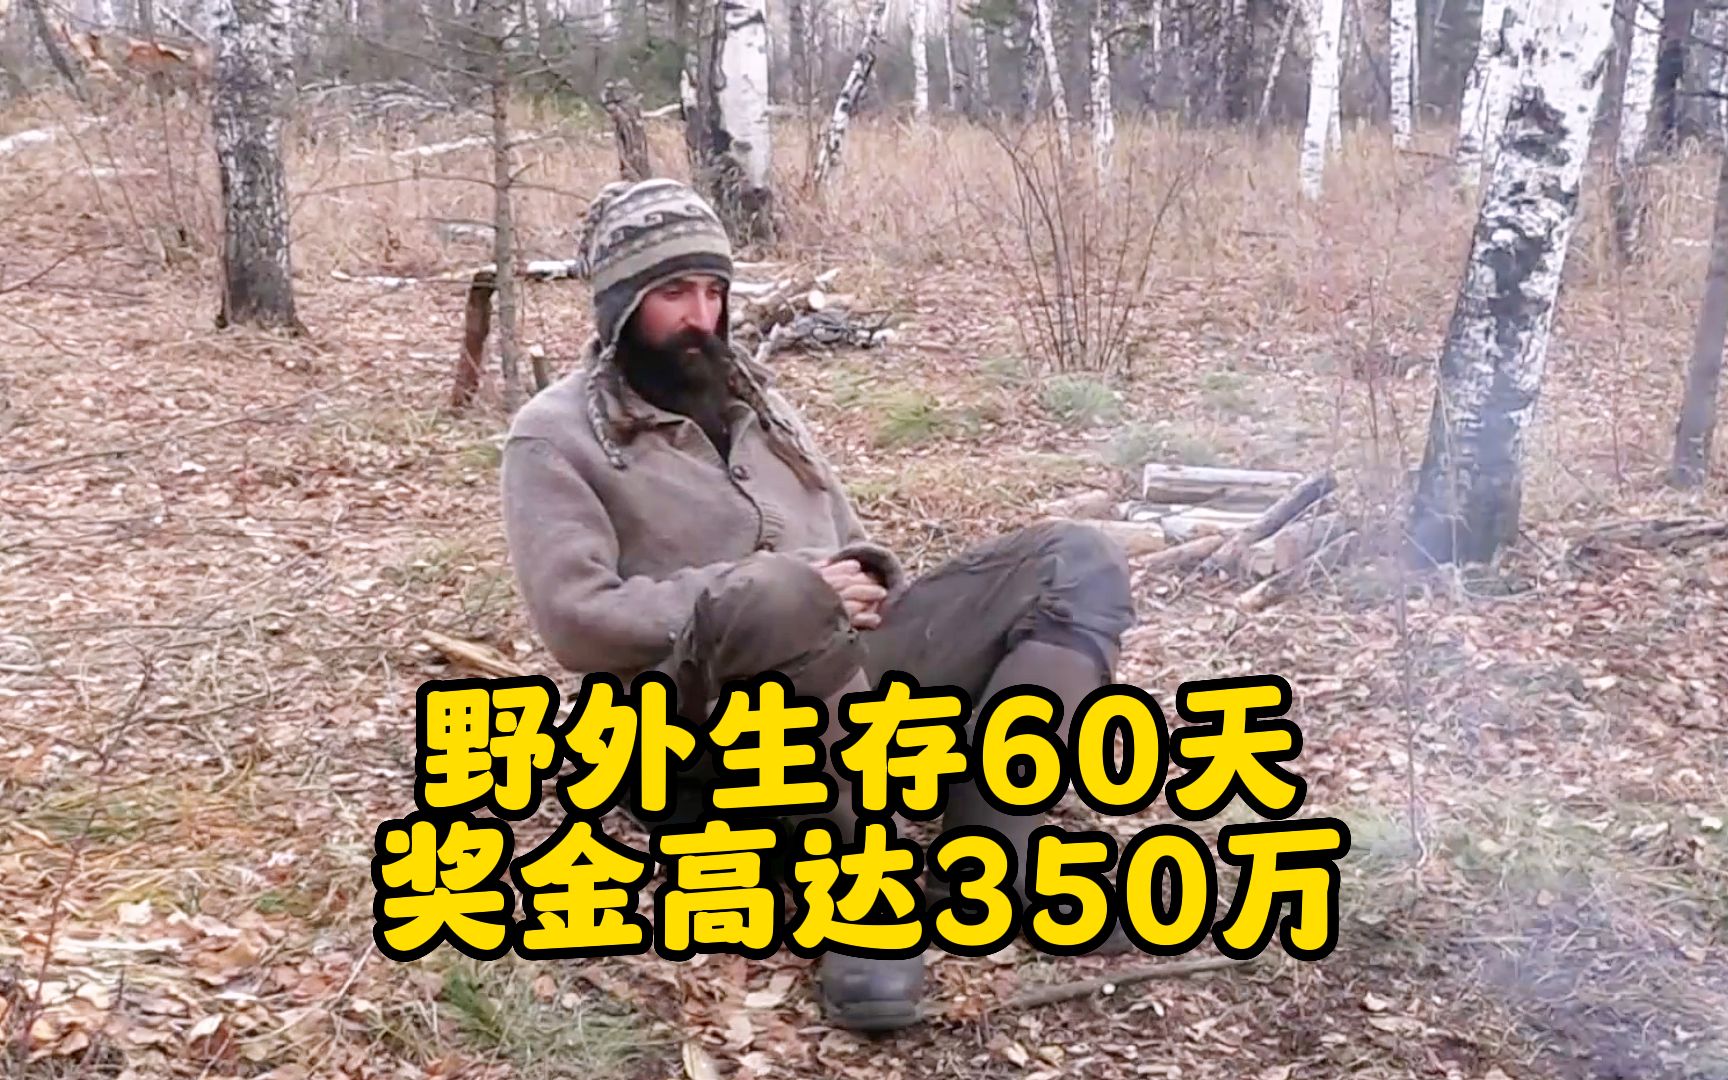 10人蒙古荒野求生，老鼠成为唯一食物，挨饿大赛进入火拼阶段，纪录片